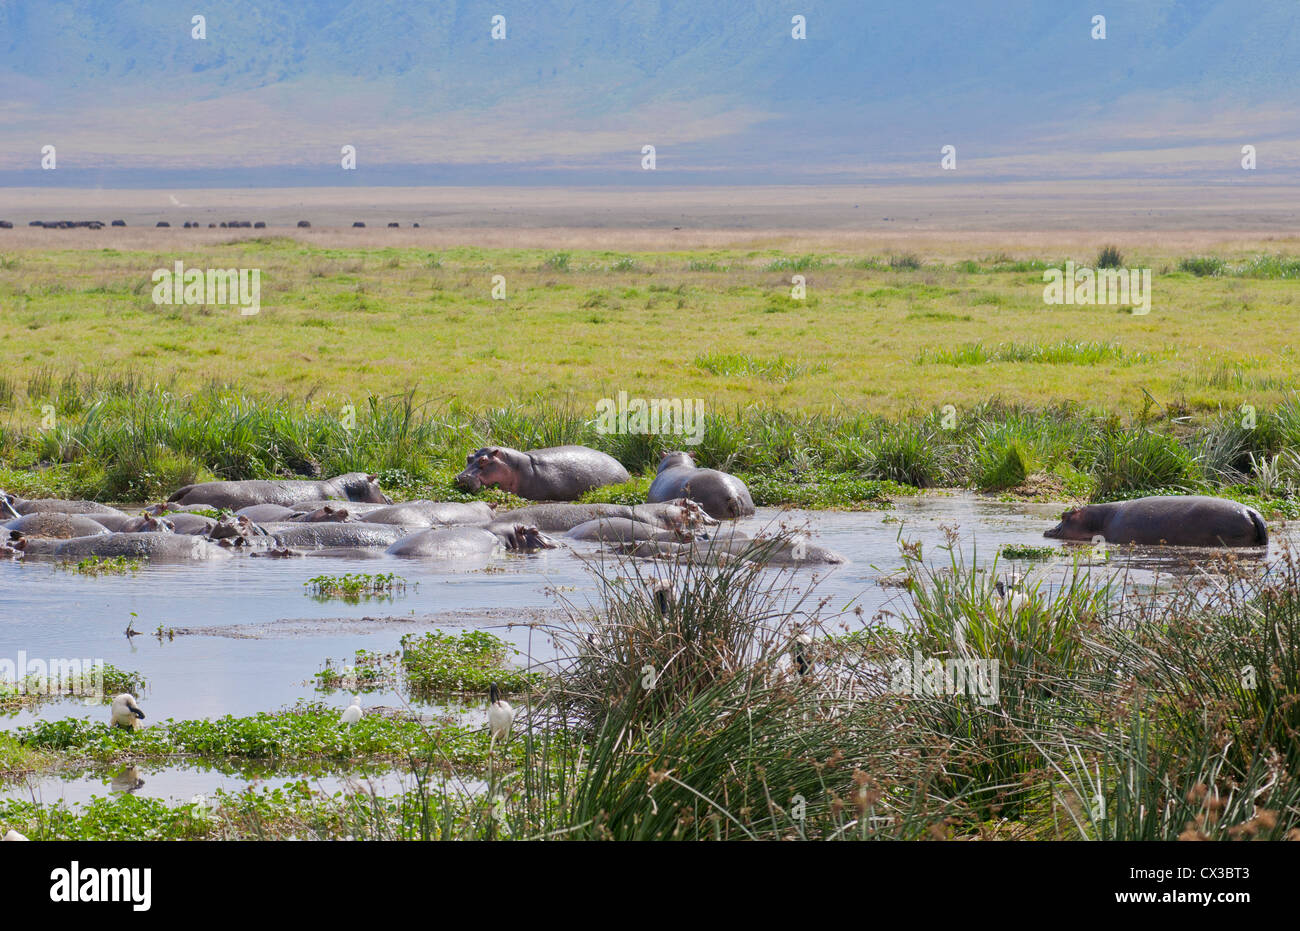 Afrique Tanzanie cratère Ngorongoro Conservation Area avec réserve et des hippopotames dans l'eau animaux dans wild safari Banque D'Images